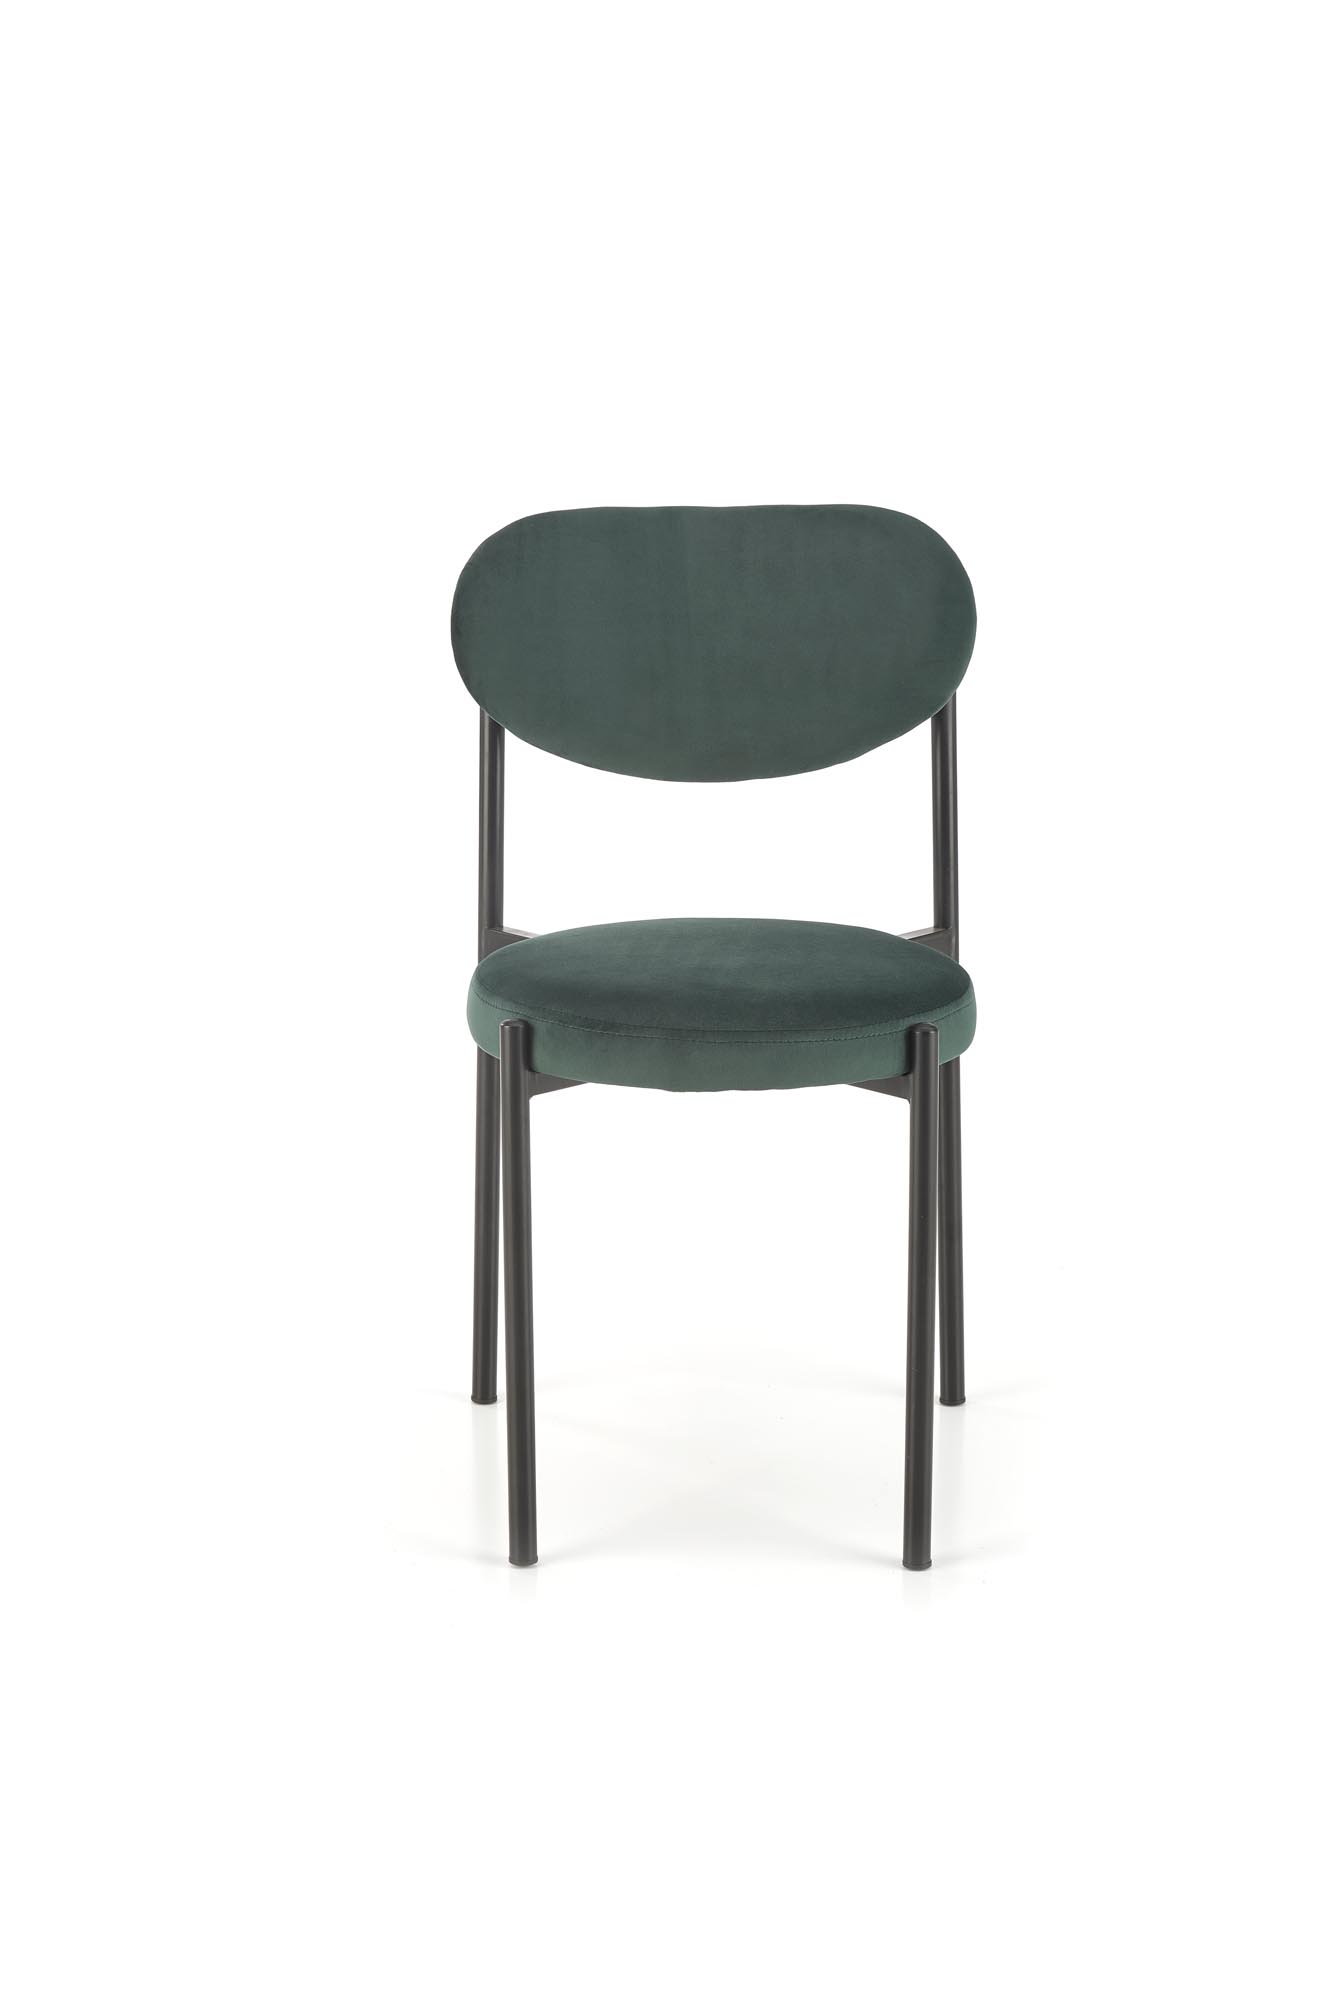 K509 Židle tmavý Zelený Židle čalouněné k509 - tmavá Zeleň